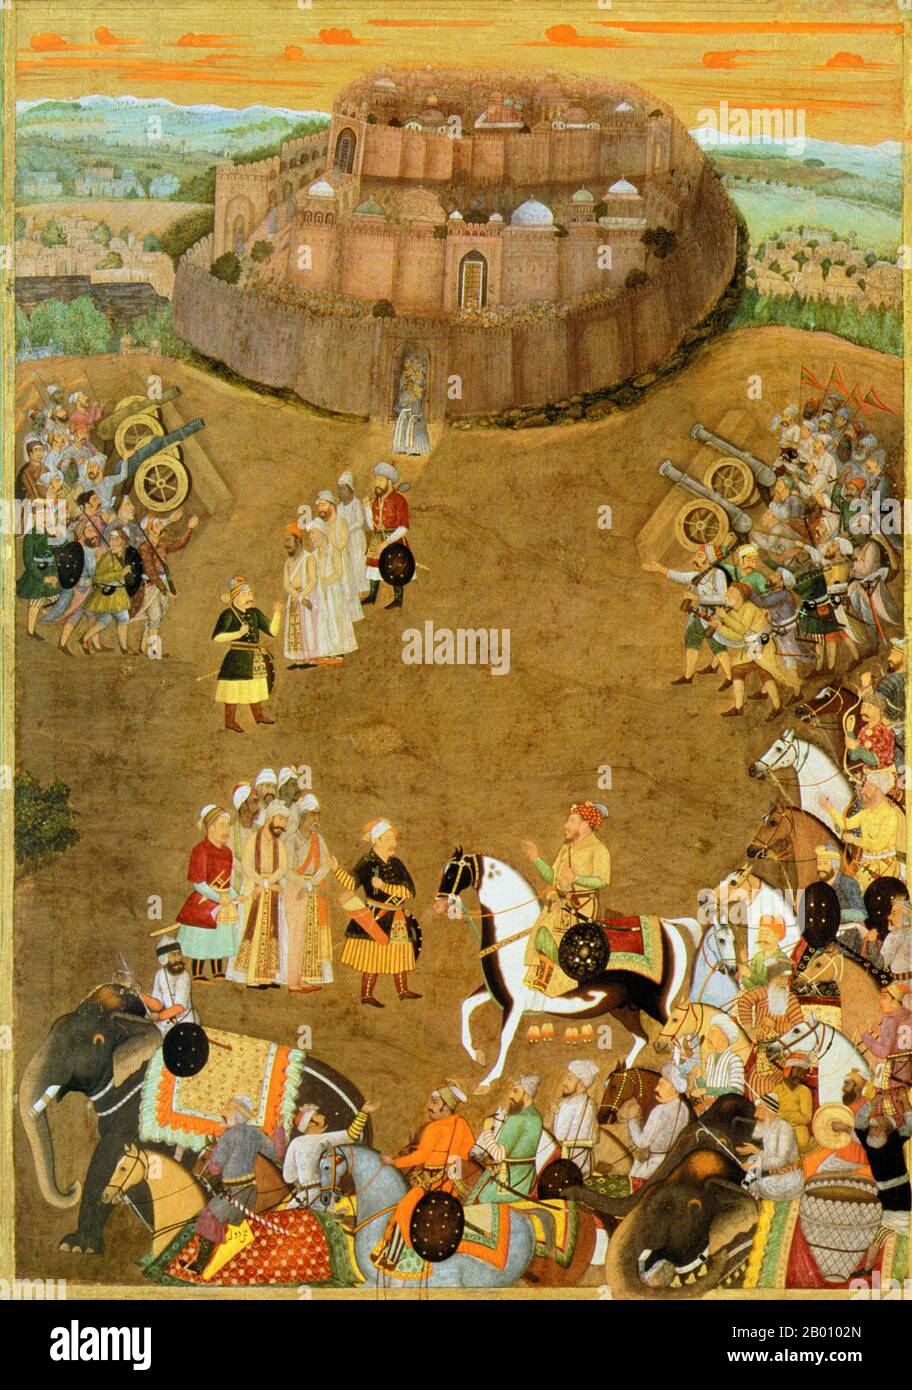 Indien: Die Übergabe der Festung von Udgir an Mughal Kräfte von Shah Jahan im Oktober 1636. Gemälde von Dhola (fl. 17th Jahrhundert), 1636. Shahab-ud-din Muhammad Khurram Shah Jahan I. (1592–1666), oder Shah Jahan, aus der persischen Bedeutung ‘König der Welt’, war der fünfte Mogulherrscher in Indien und ein Favorit seines legendären Großvaters Akbar der große. Er ist vor allem dafür bekannt, die ‘Padshahnamah’ als Chronik seiner Herrschaft in Auftrag zu geben, und für den Bau des Taj Mahal in Agra als Grab für seine Frau Mumtaz Mahal. Stockfoto